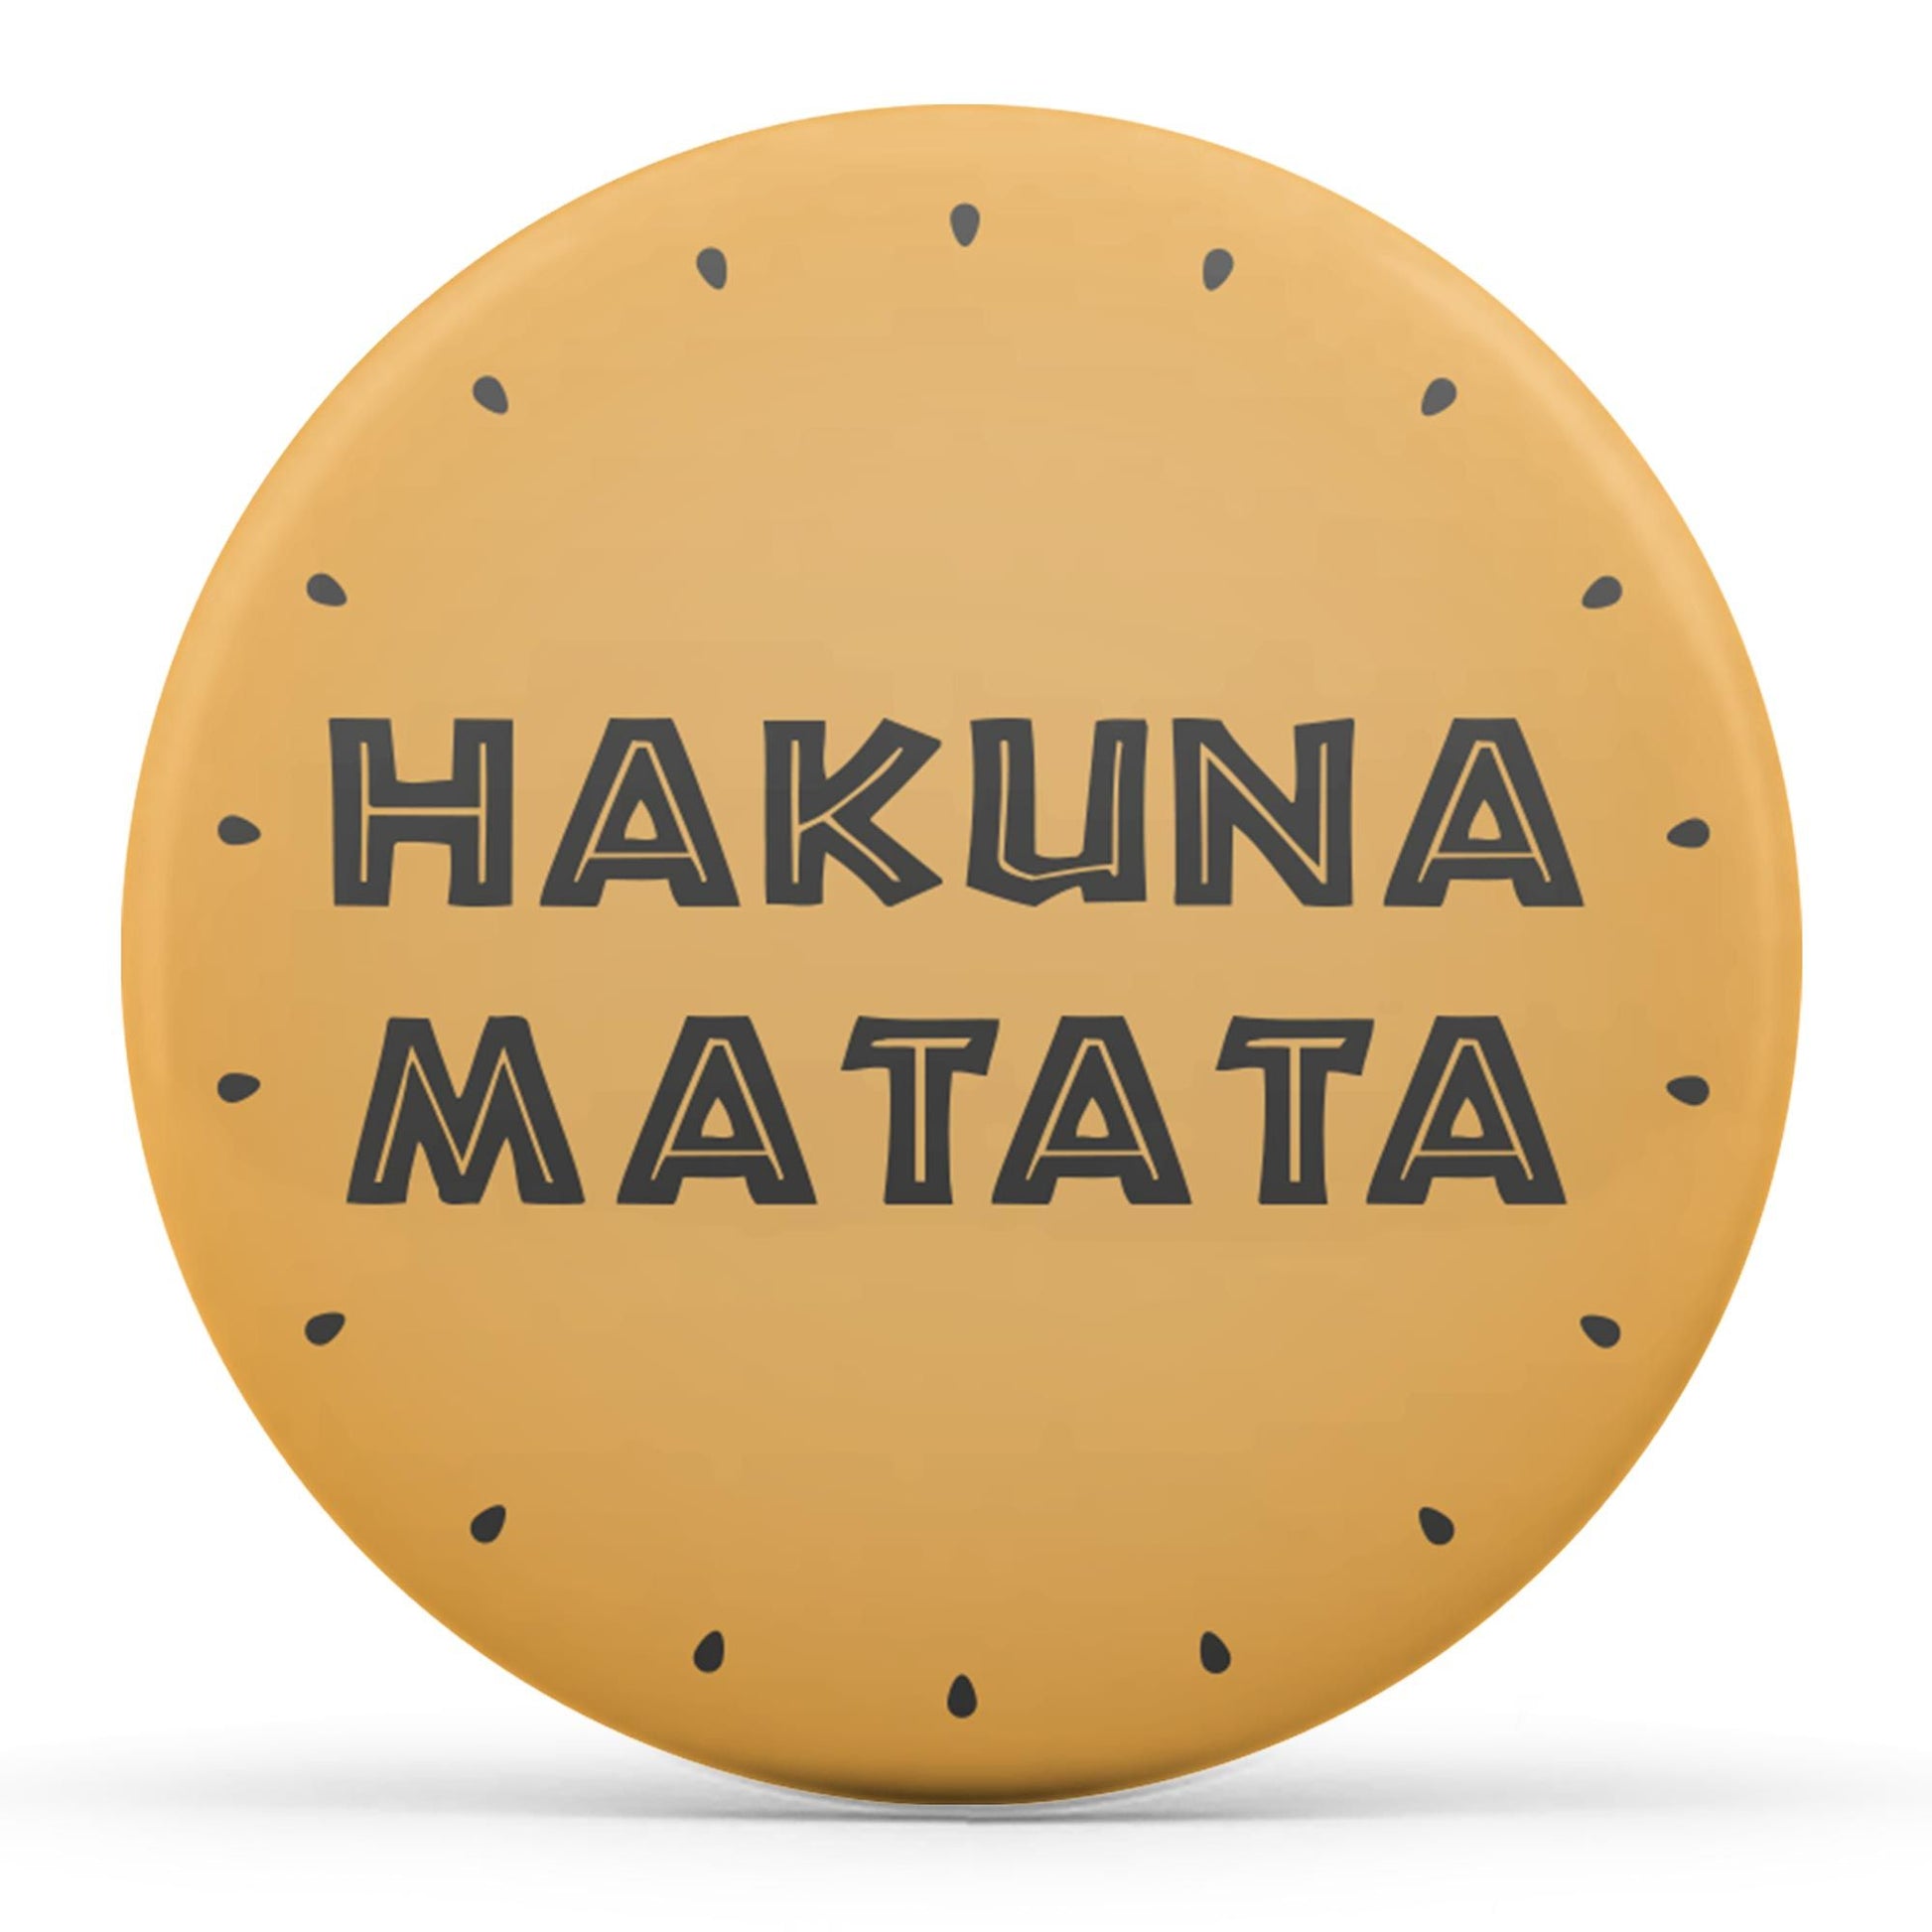 Hakuna Matata Image